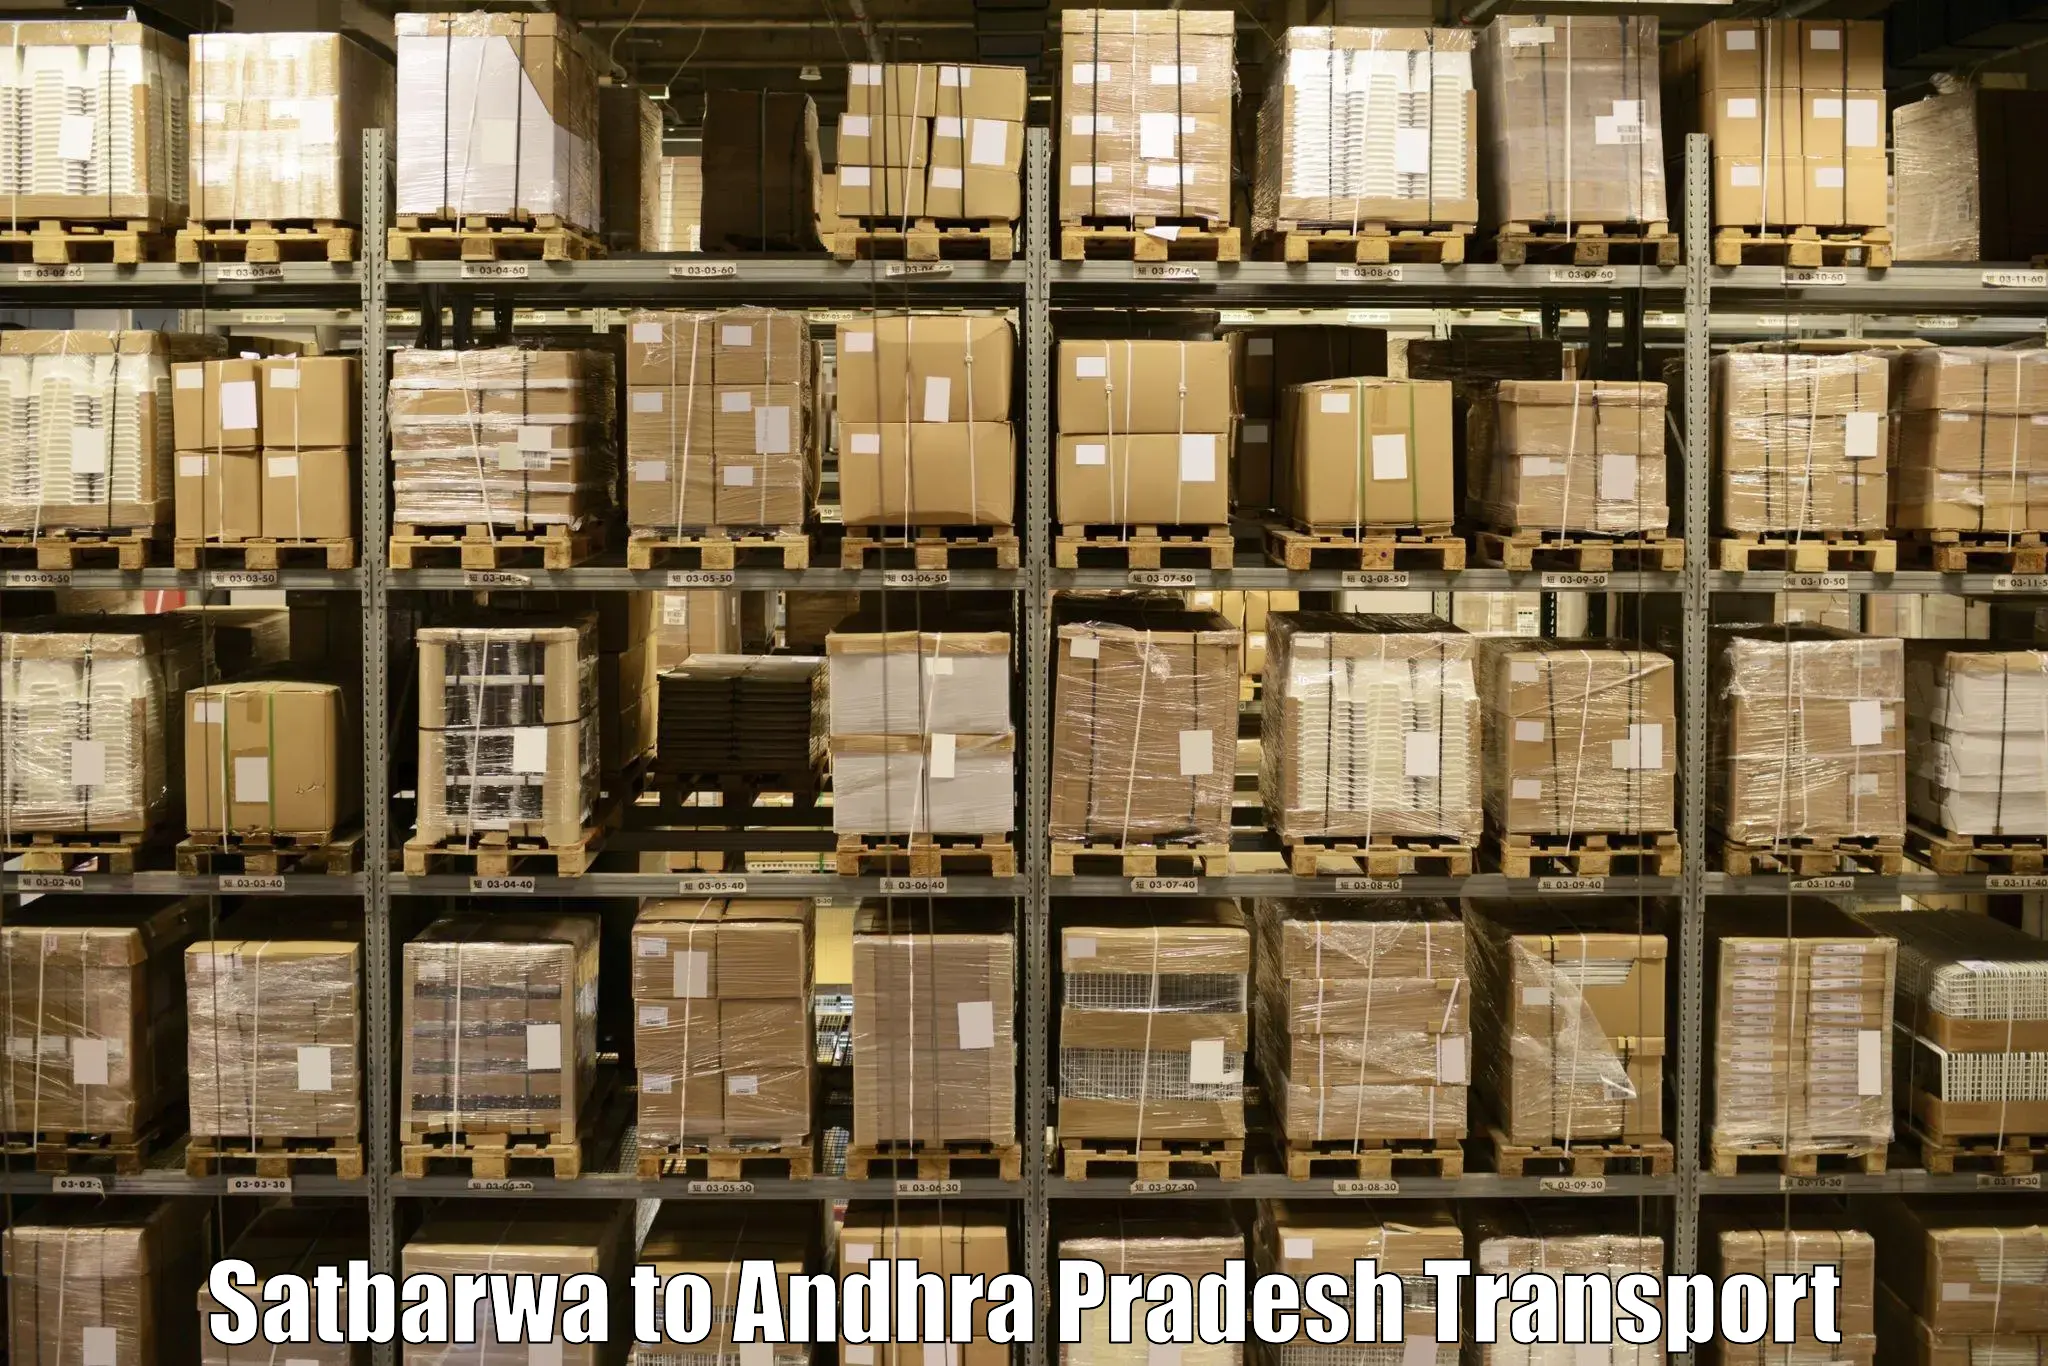 Daily parcel service transport Satbarwa to Vidyanagar Nellore